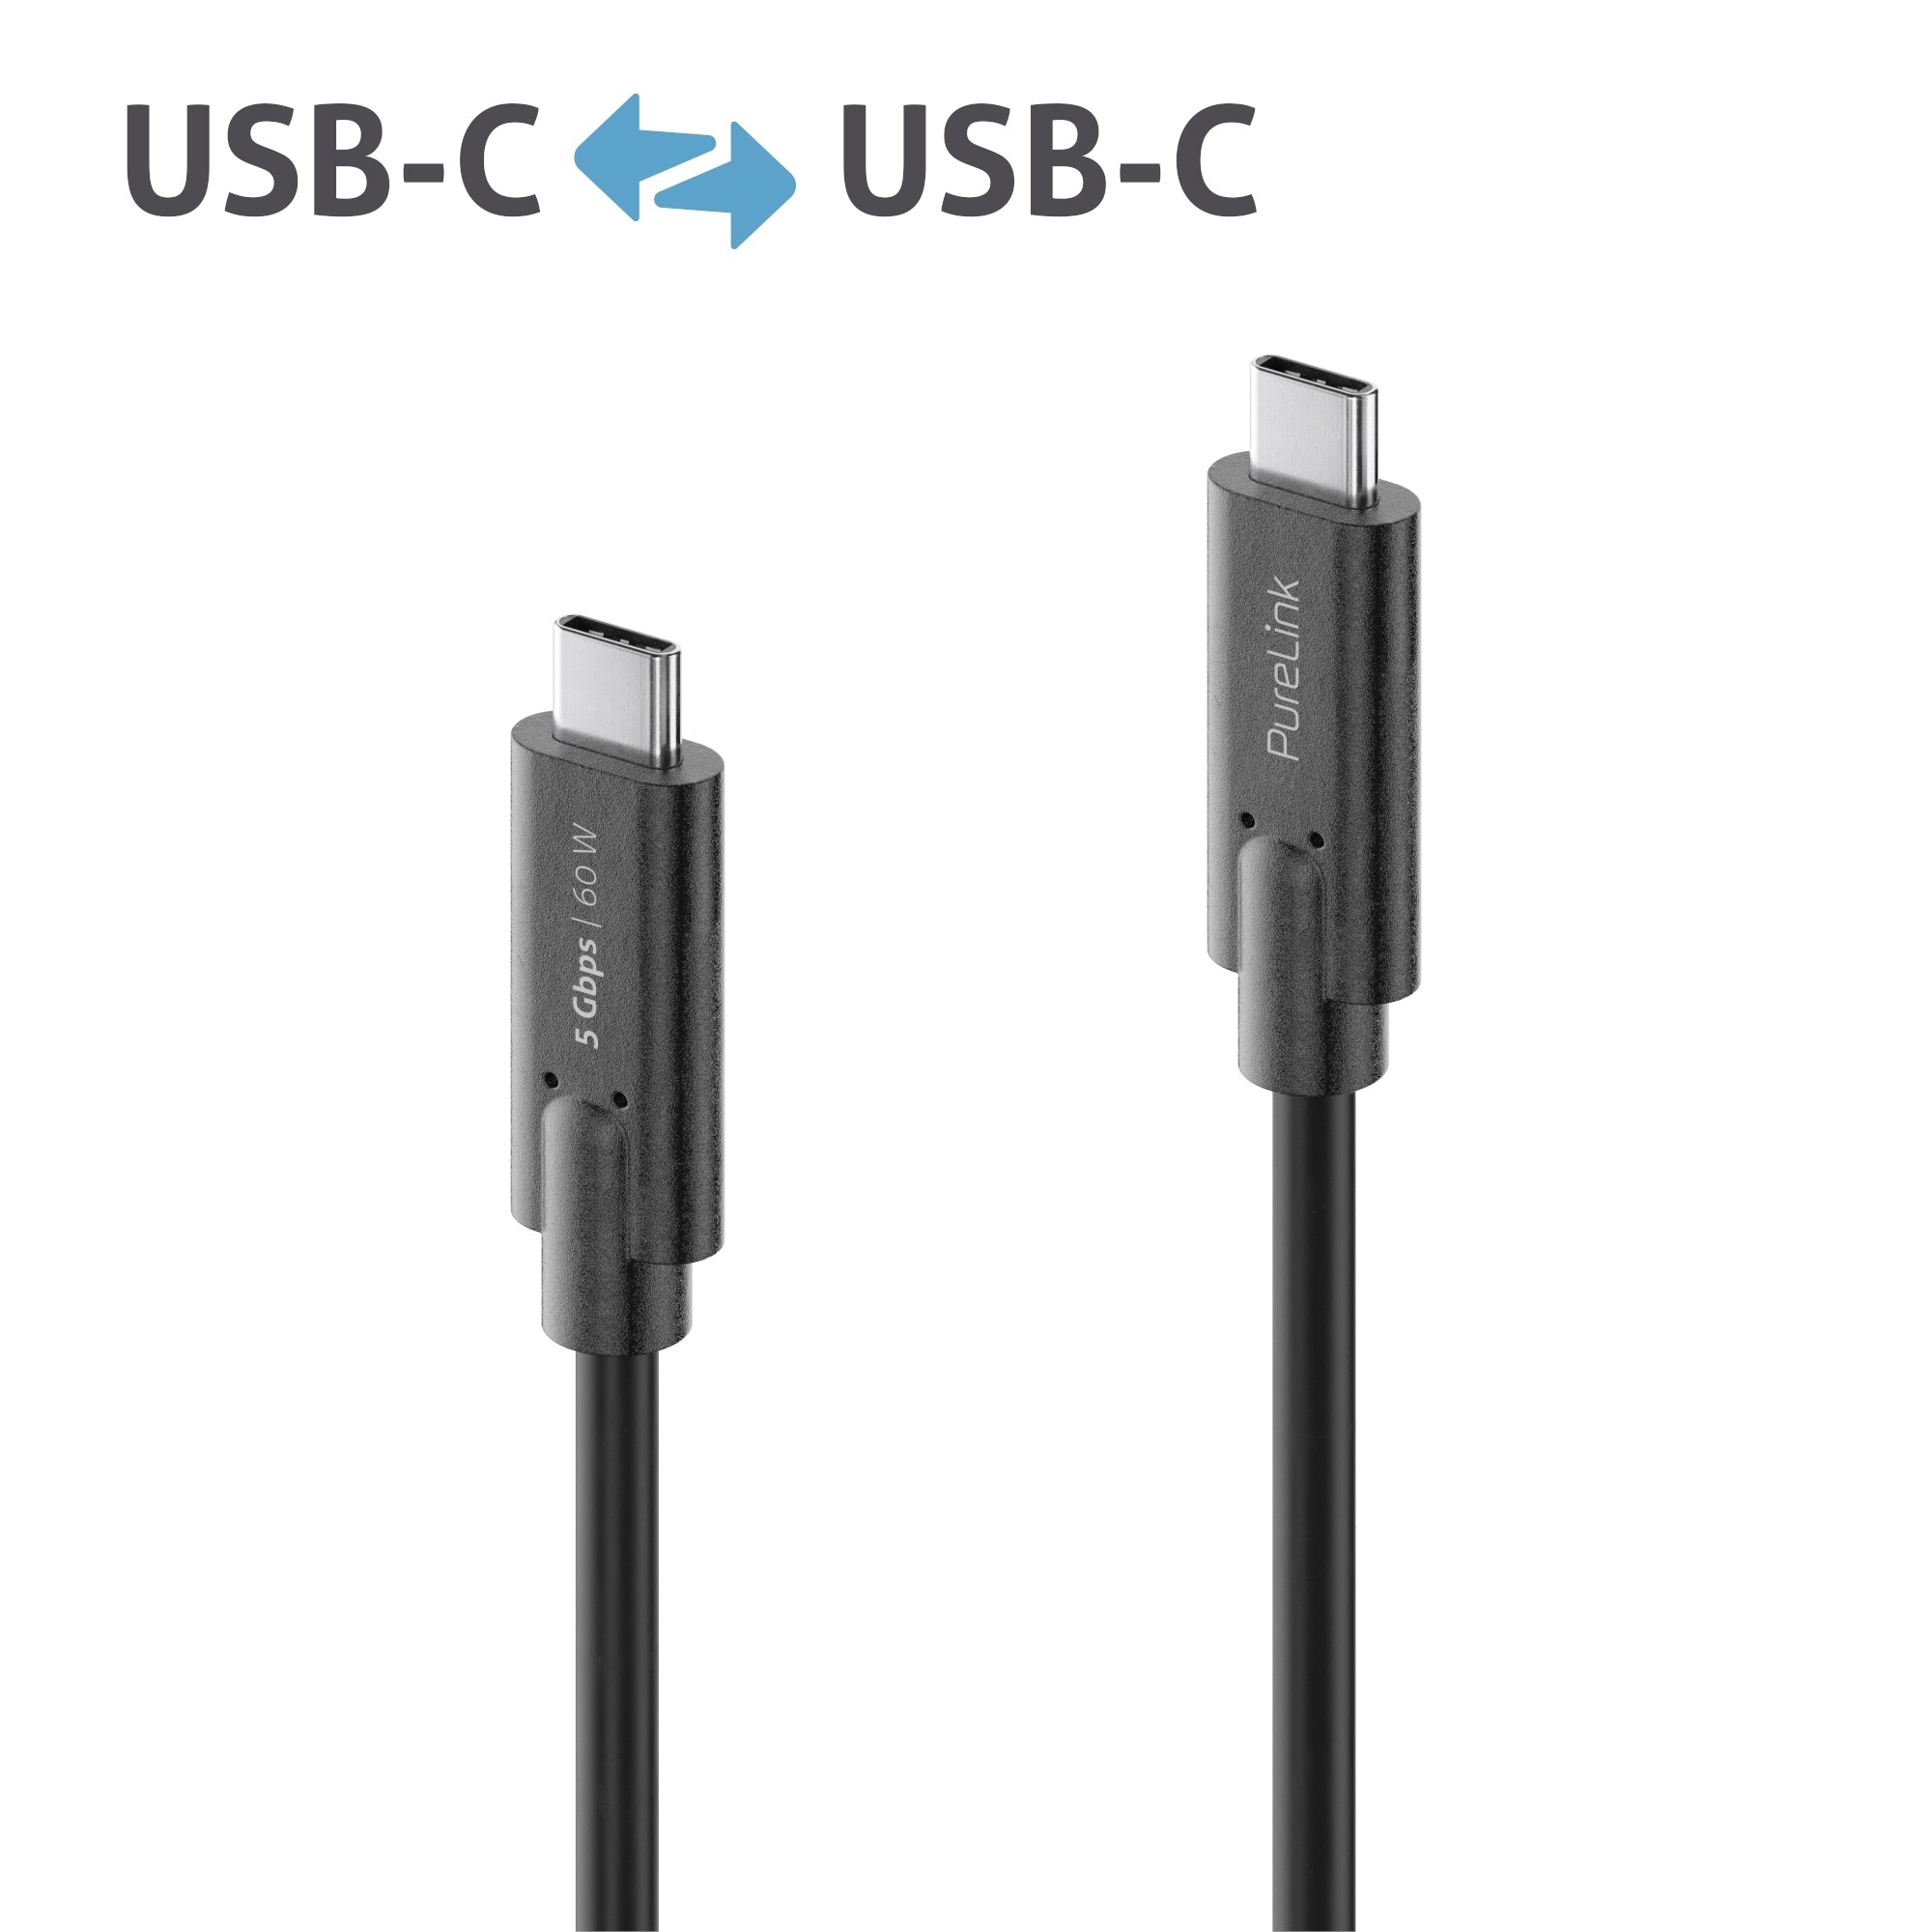 Purelink-IS2501-005-USB-C-auf-USB-C-Kabel-0-5m-schwarz